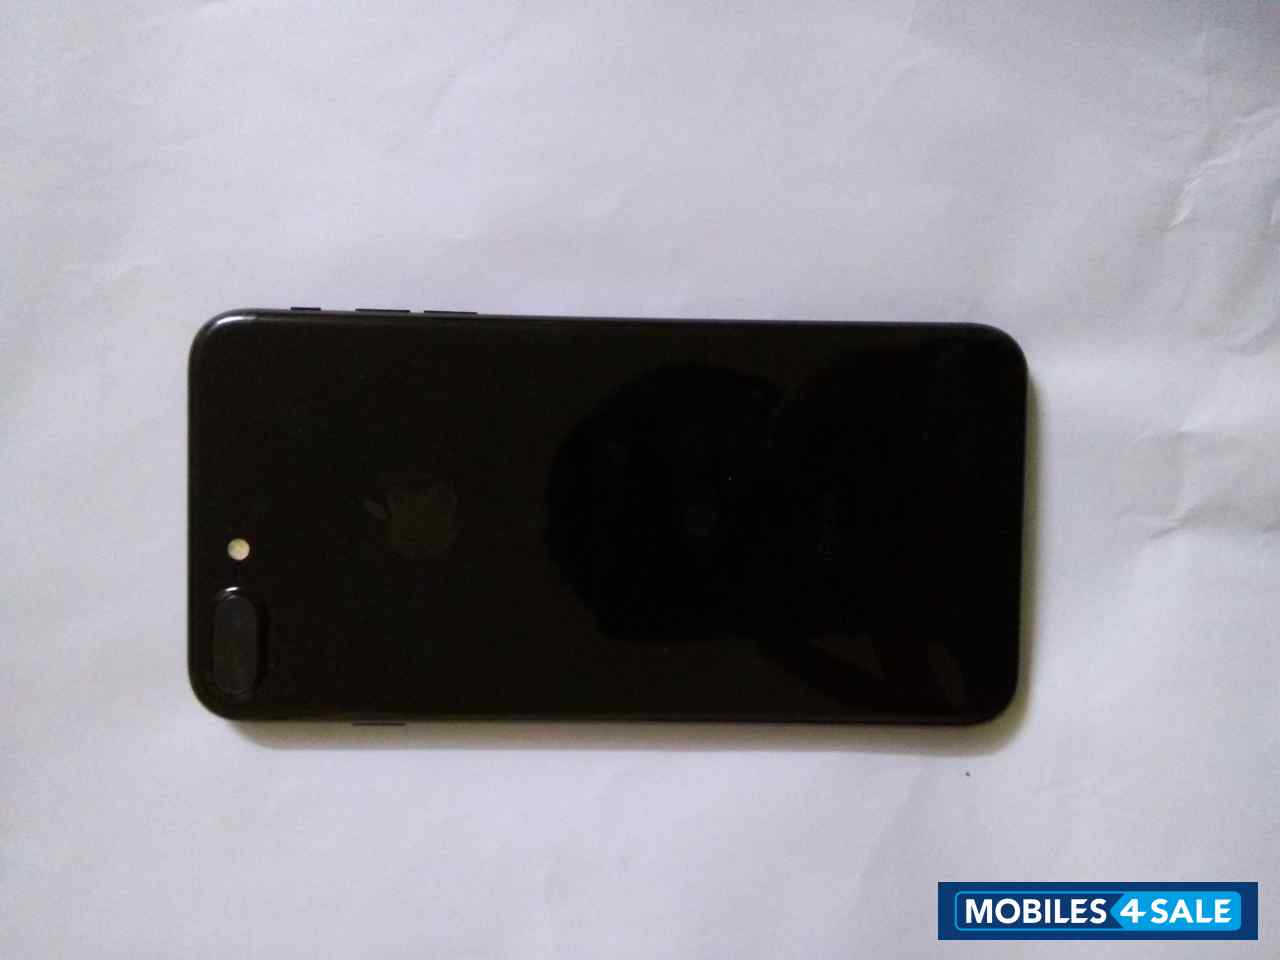 Black Apple iPhone 7 Plus